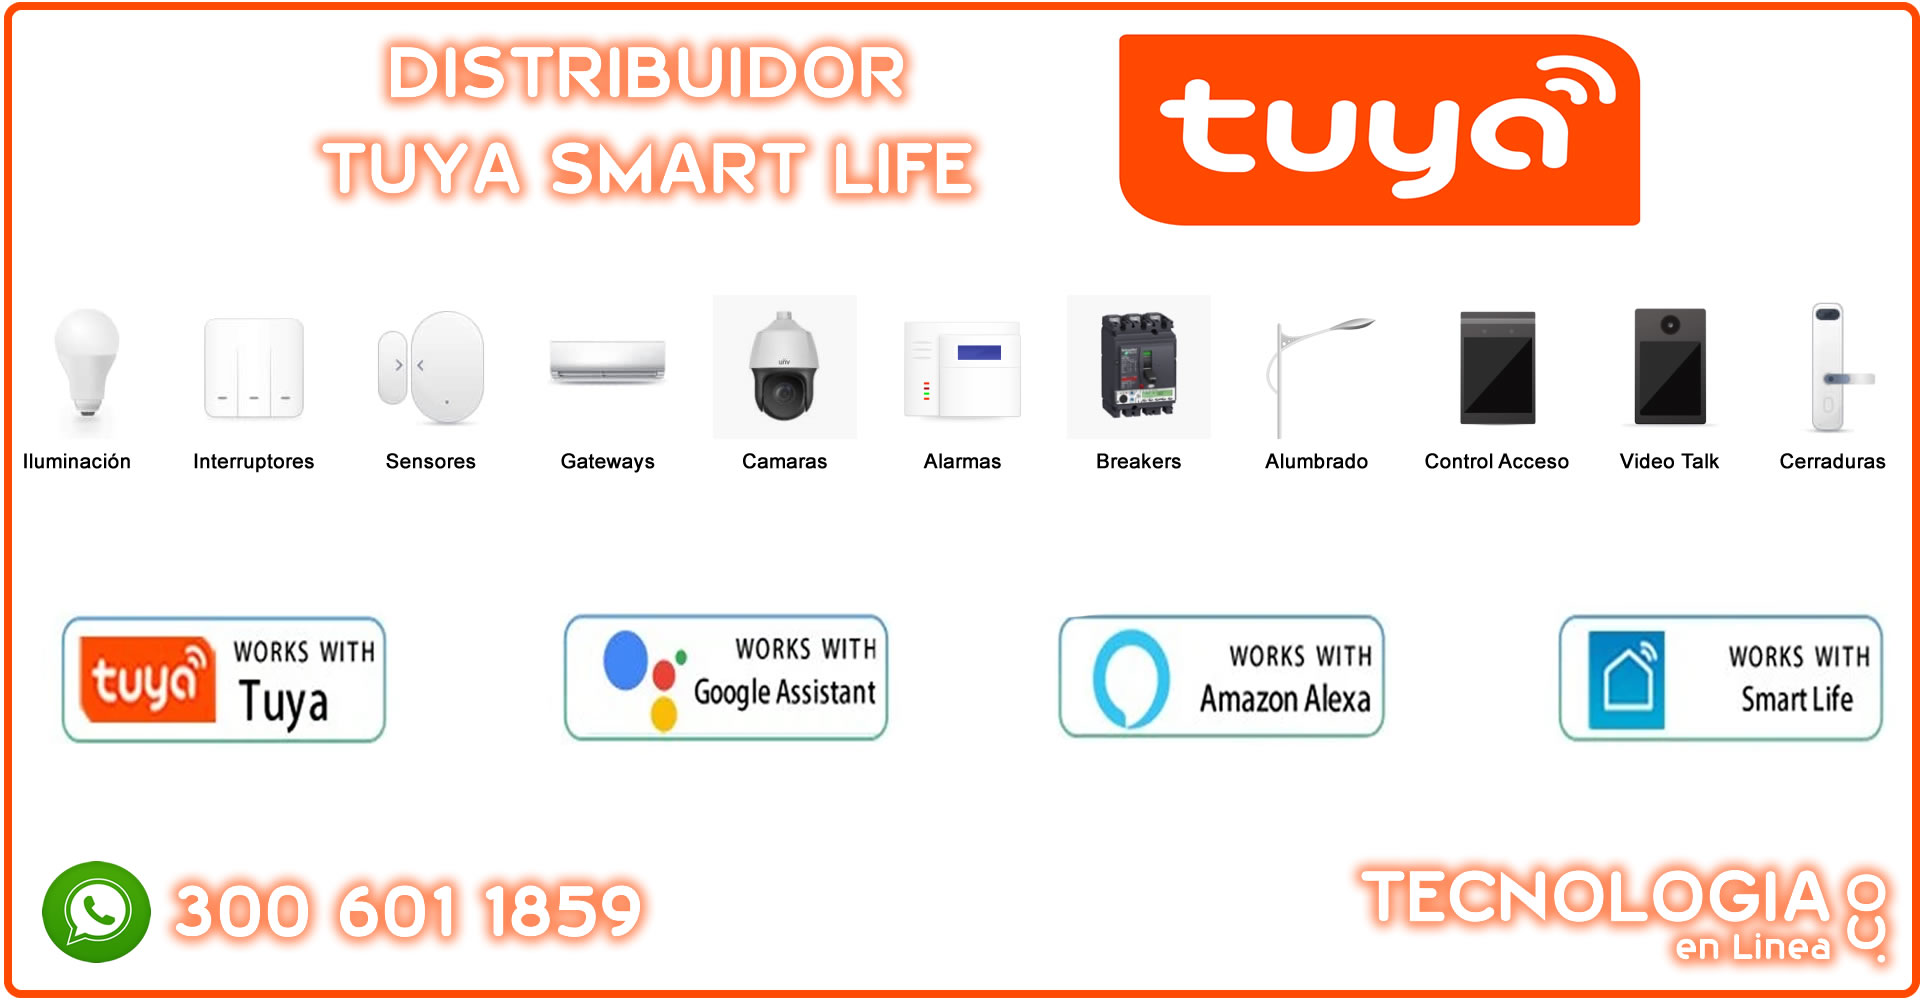 Distribuidor Tuya Smart Lifee